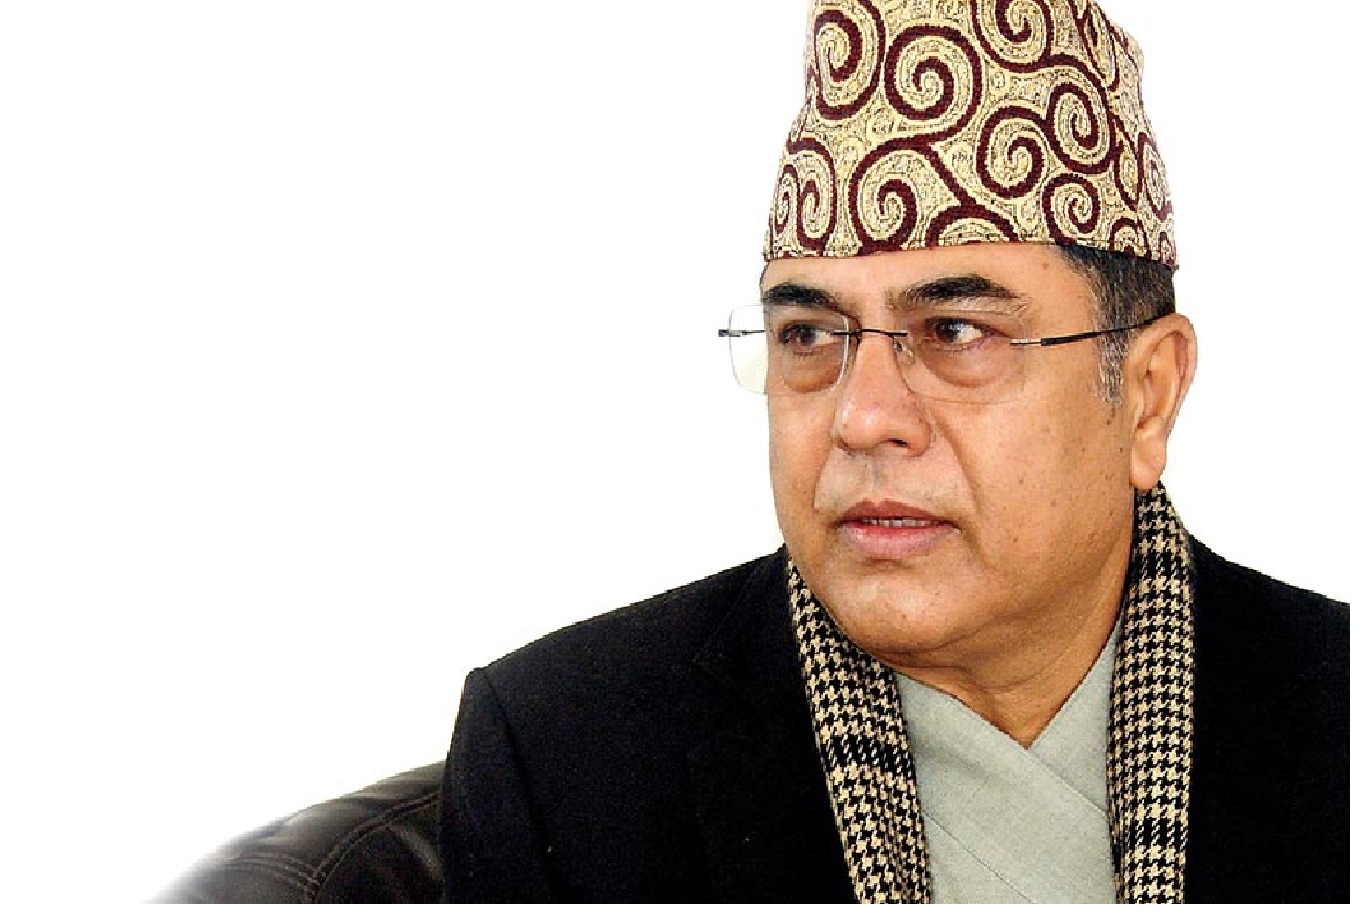 President Paudel’s economic advisor Nepal’s resignation approved